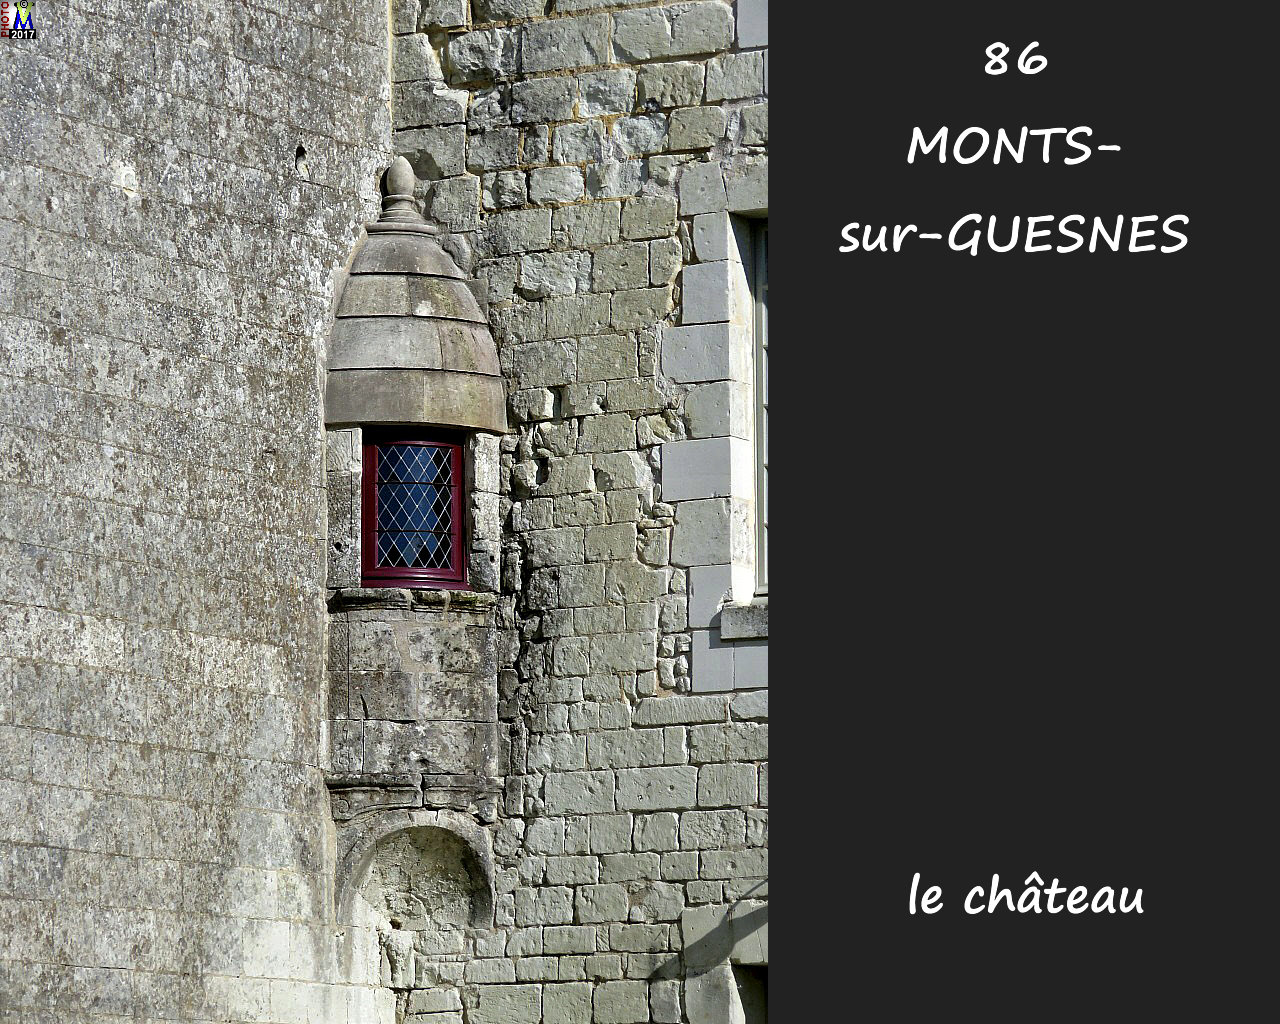 86MONTS-sur-GUESNES_chateau_112.jpg